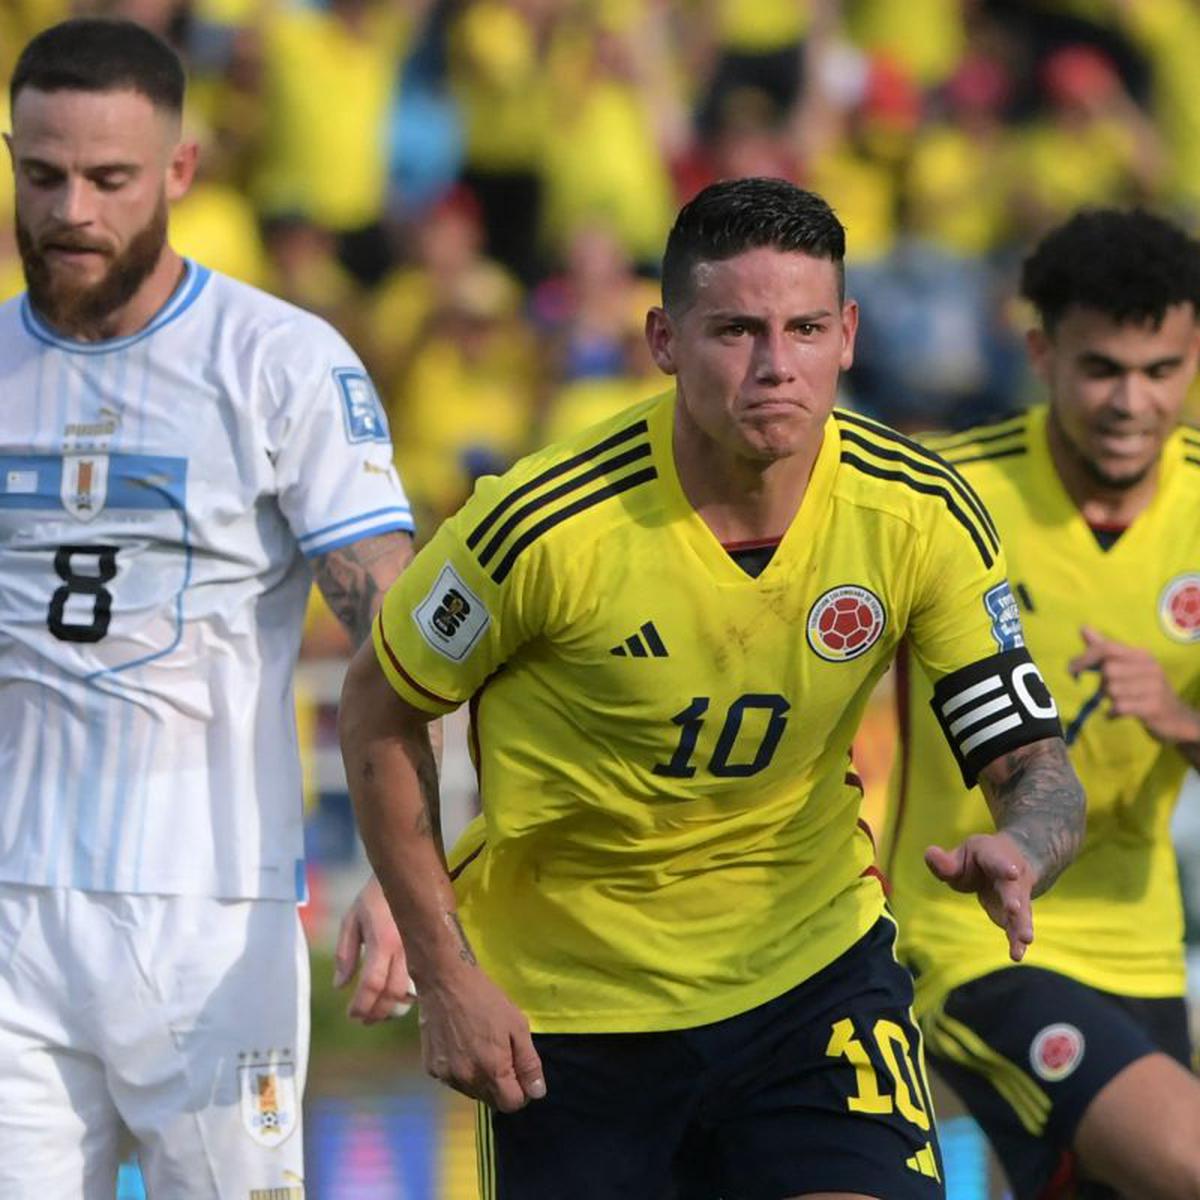 Ver Fútbol Libre EN VIVO partidos Argentina - Ecuador - Colombia - Uruguay  por Copa América hoy, Actualidad